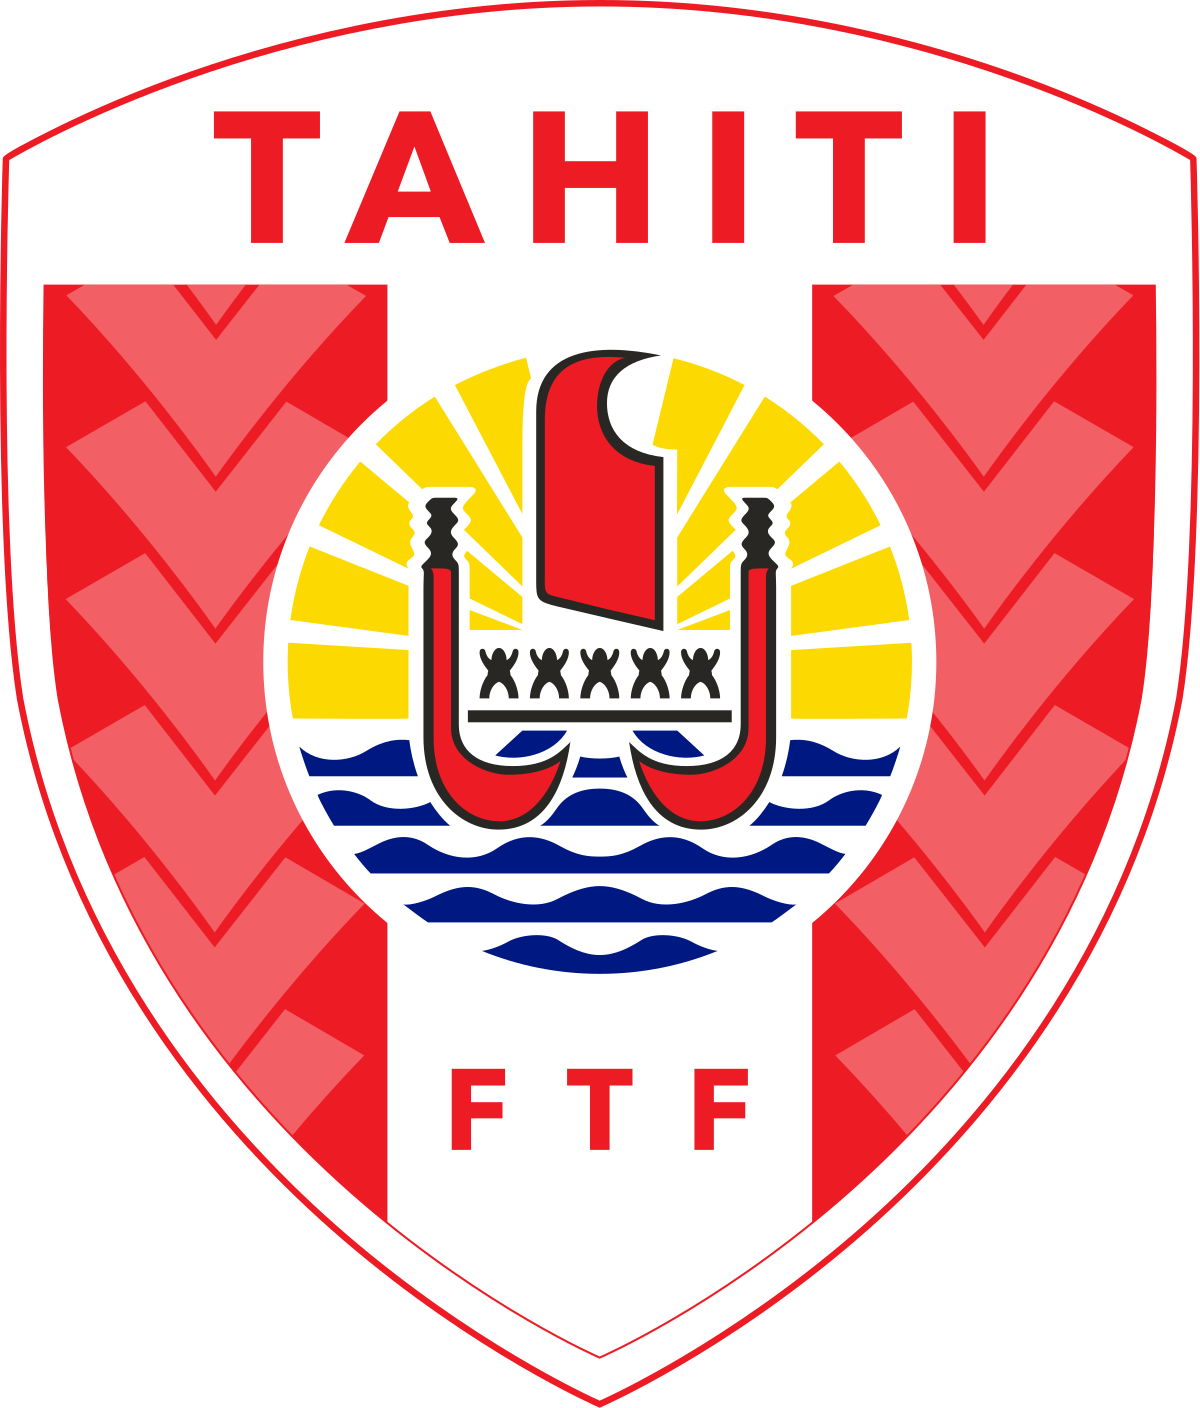 Tahiti football team crest